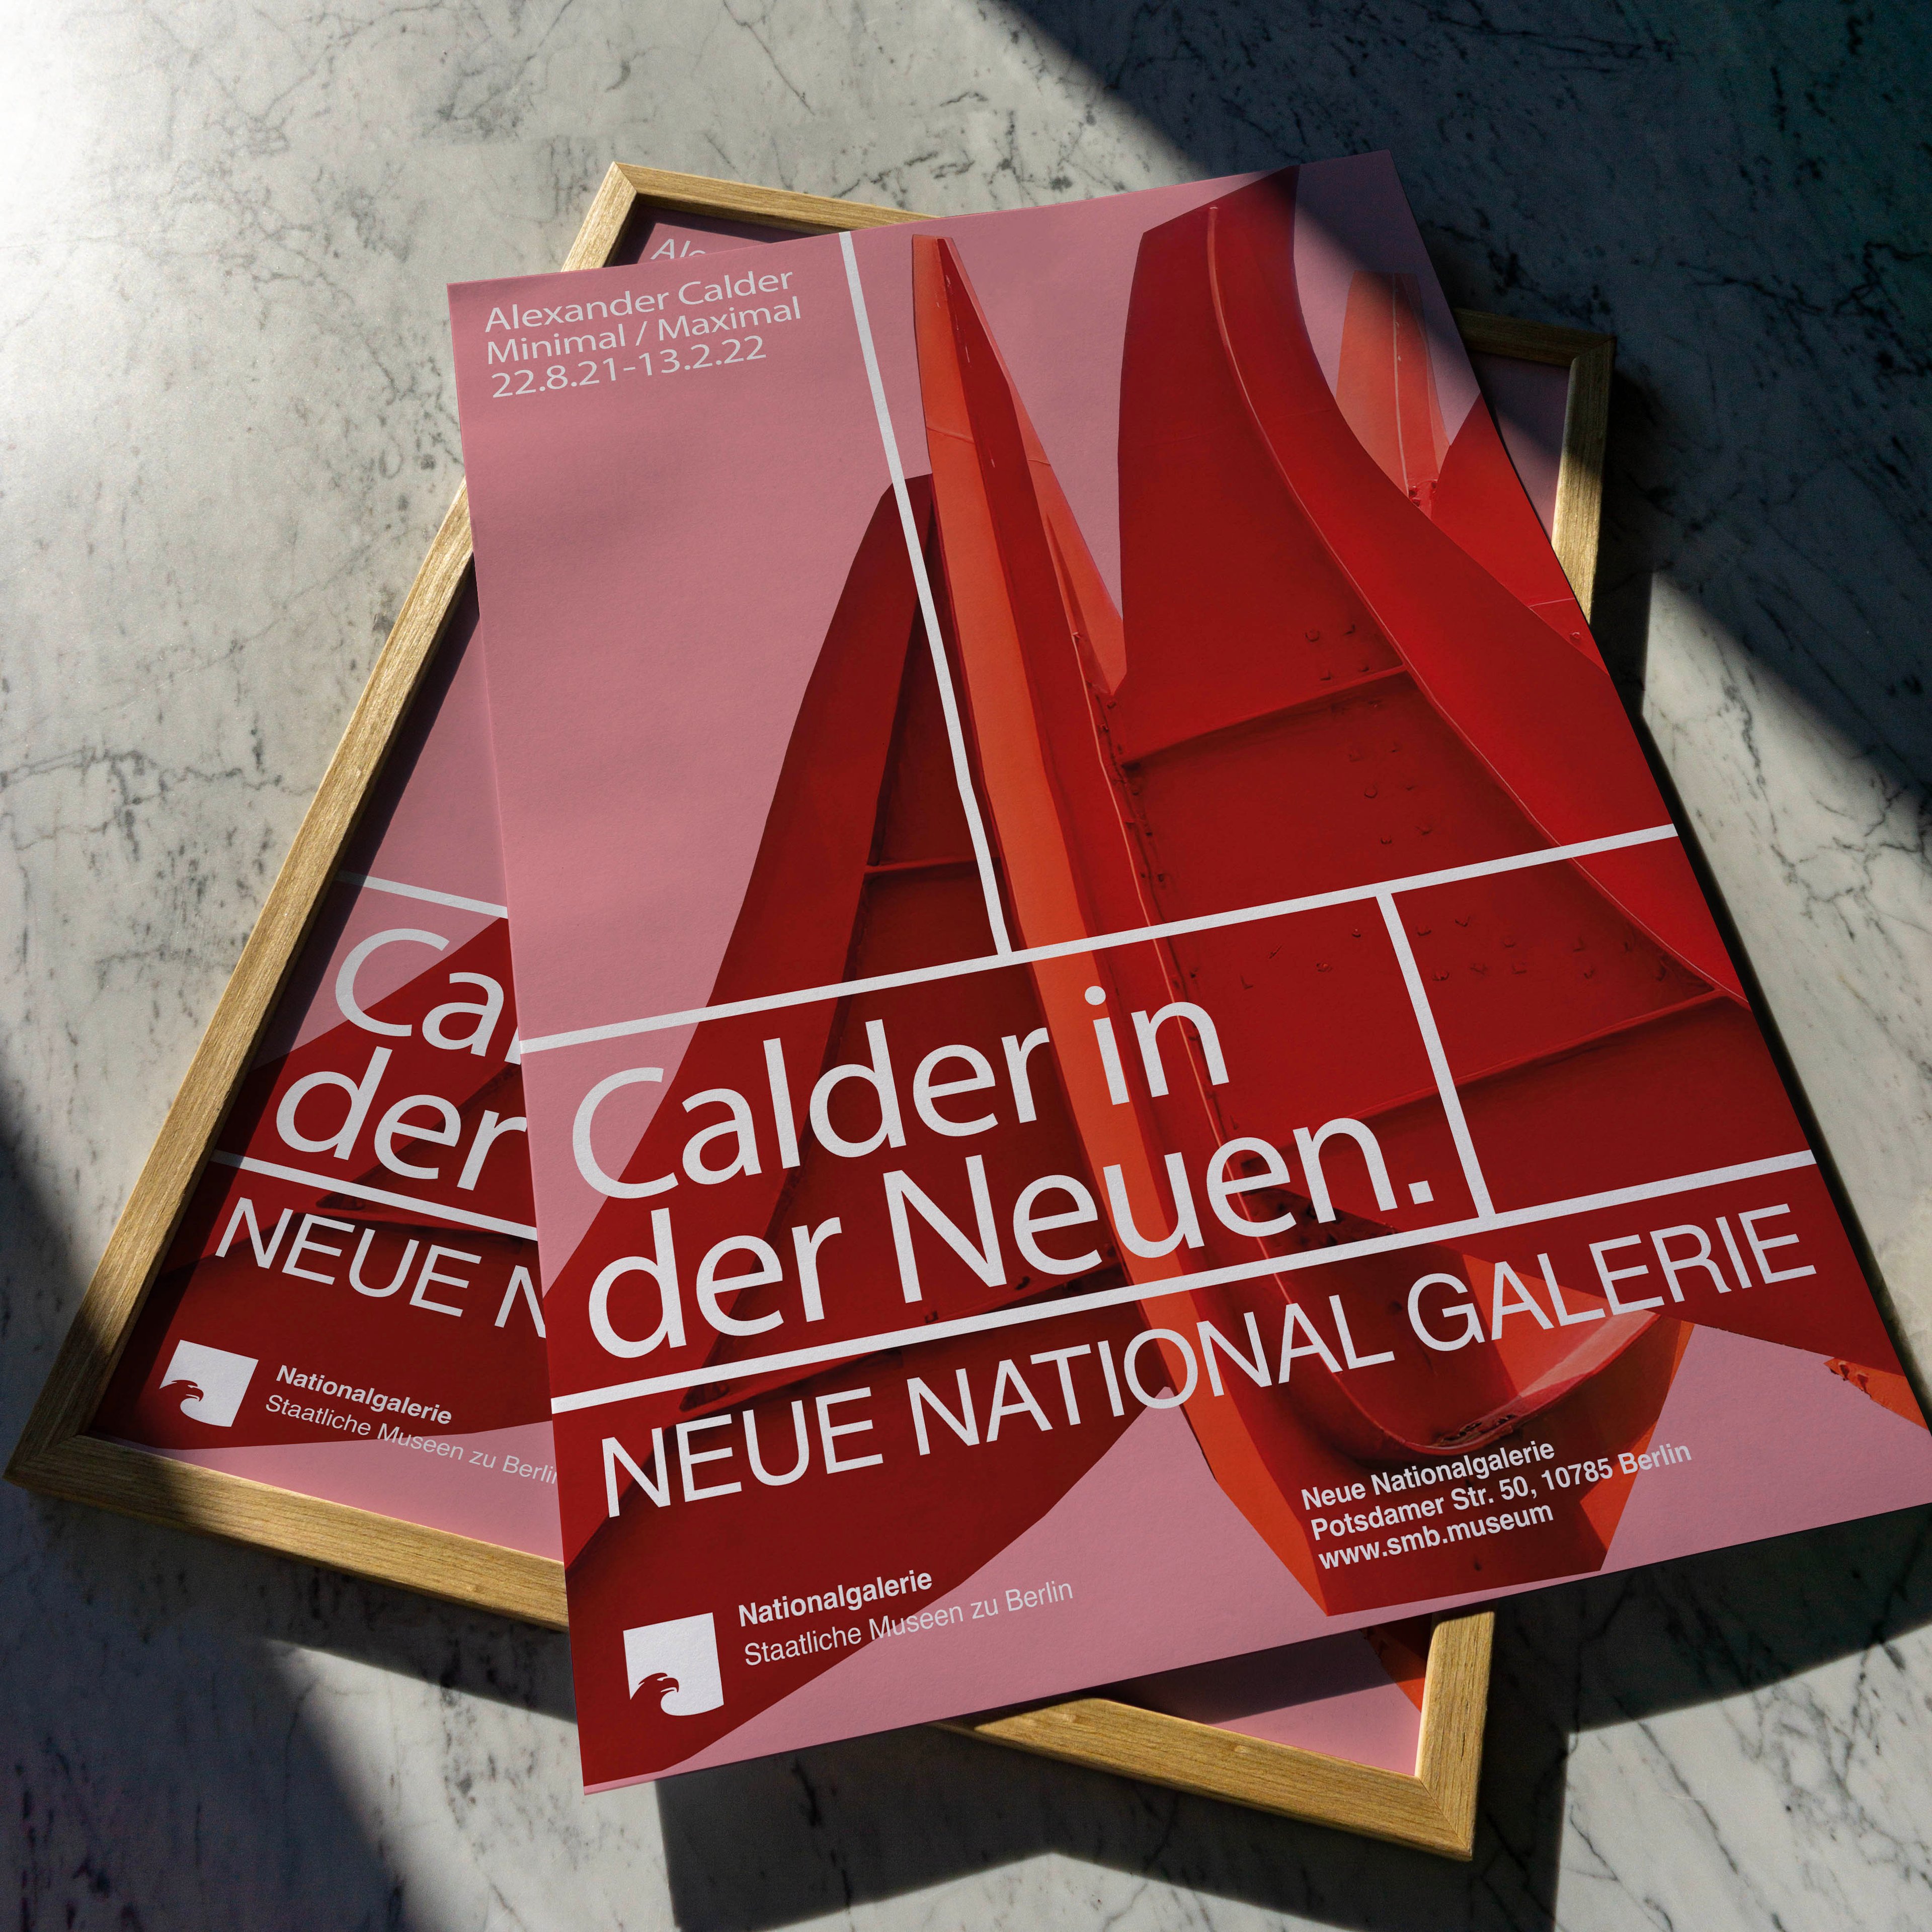 Alexander Calder - Calder in der Neuen  main variant image